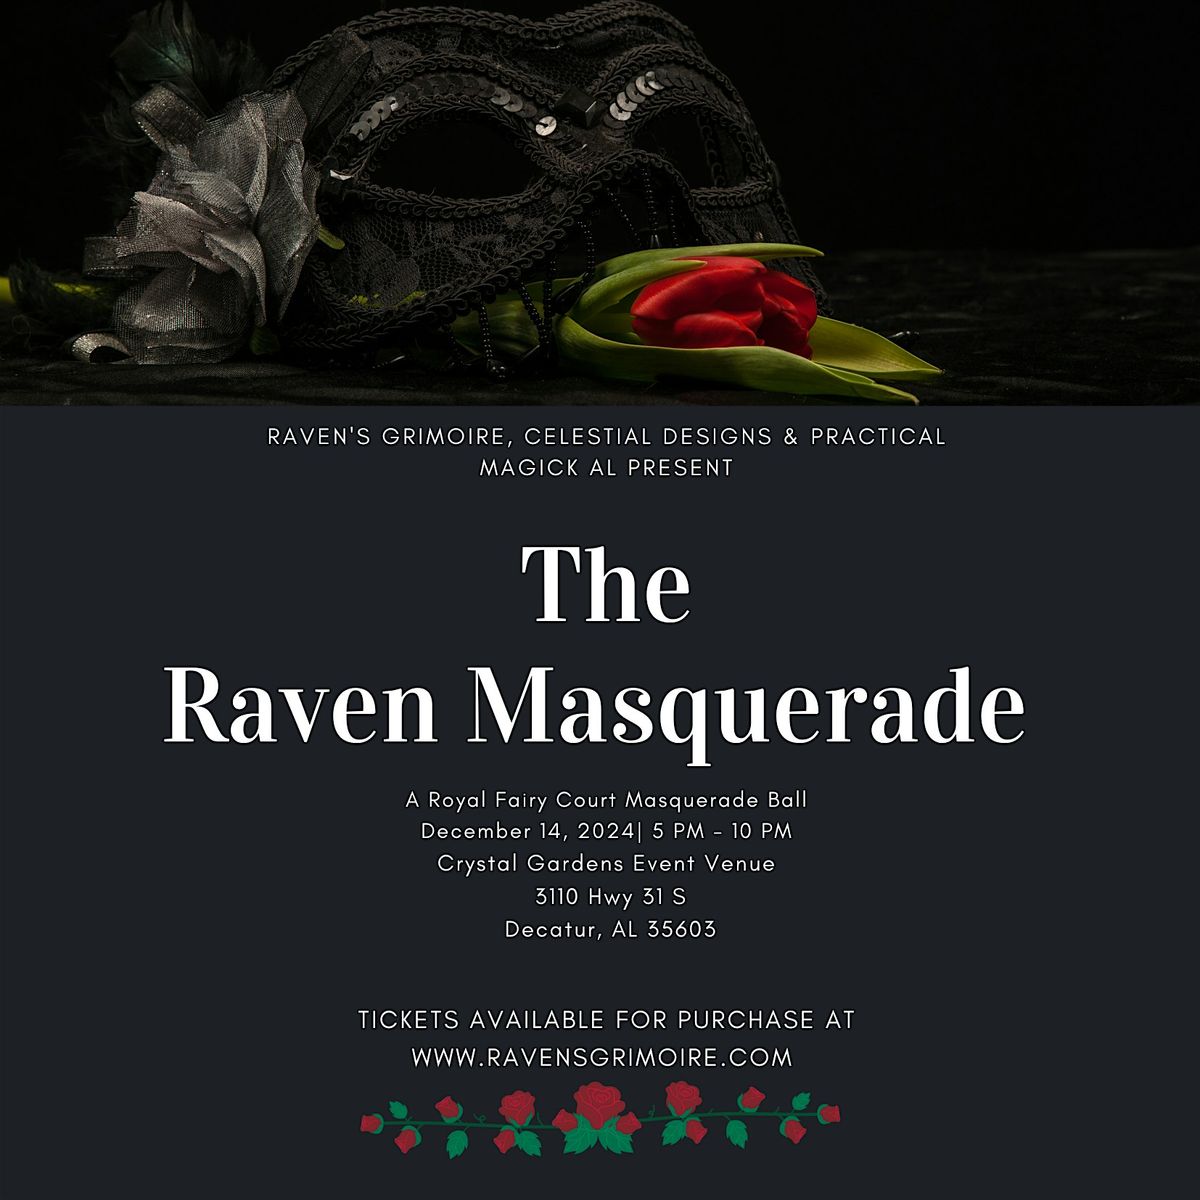 The Raven Masquerade: A Royal Fairy Court Masquerade Ball